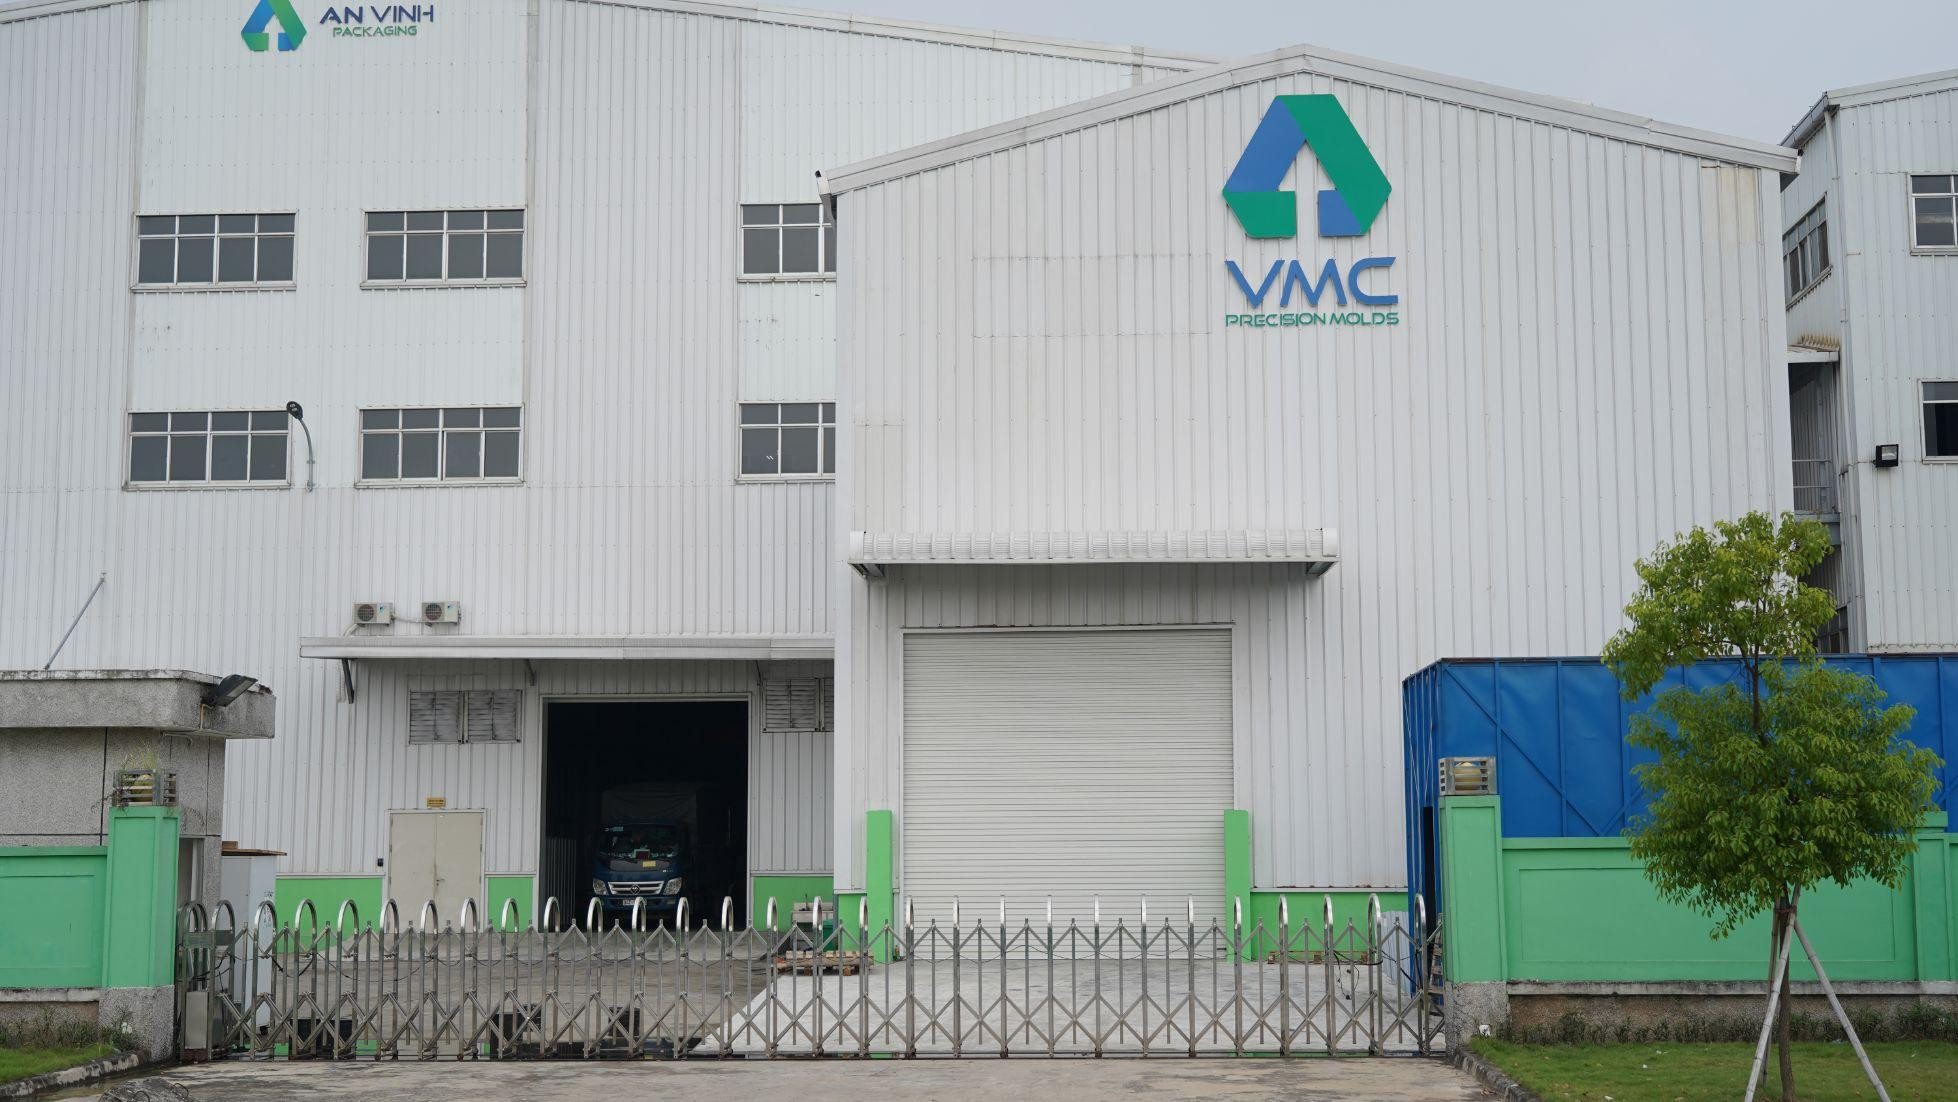 Giải pháp cải thiện năng suất đánh bóng khuôn mẫu tại công ty cơ khí chính xác và chế tạo khuôn mẫu Việt Nam (VMC)